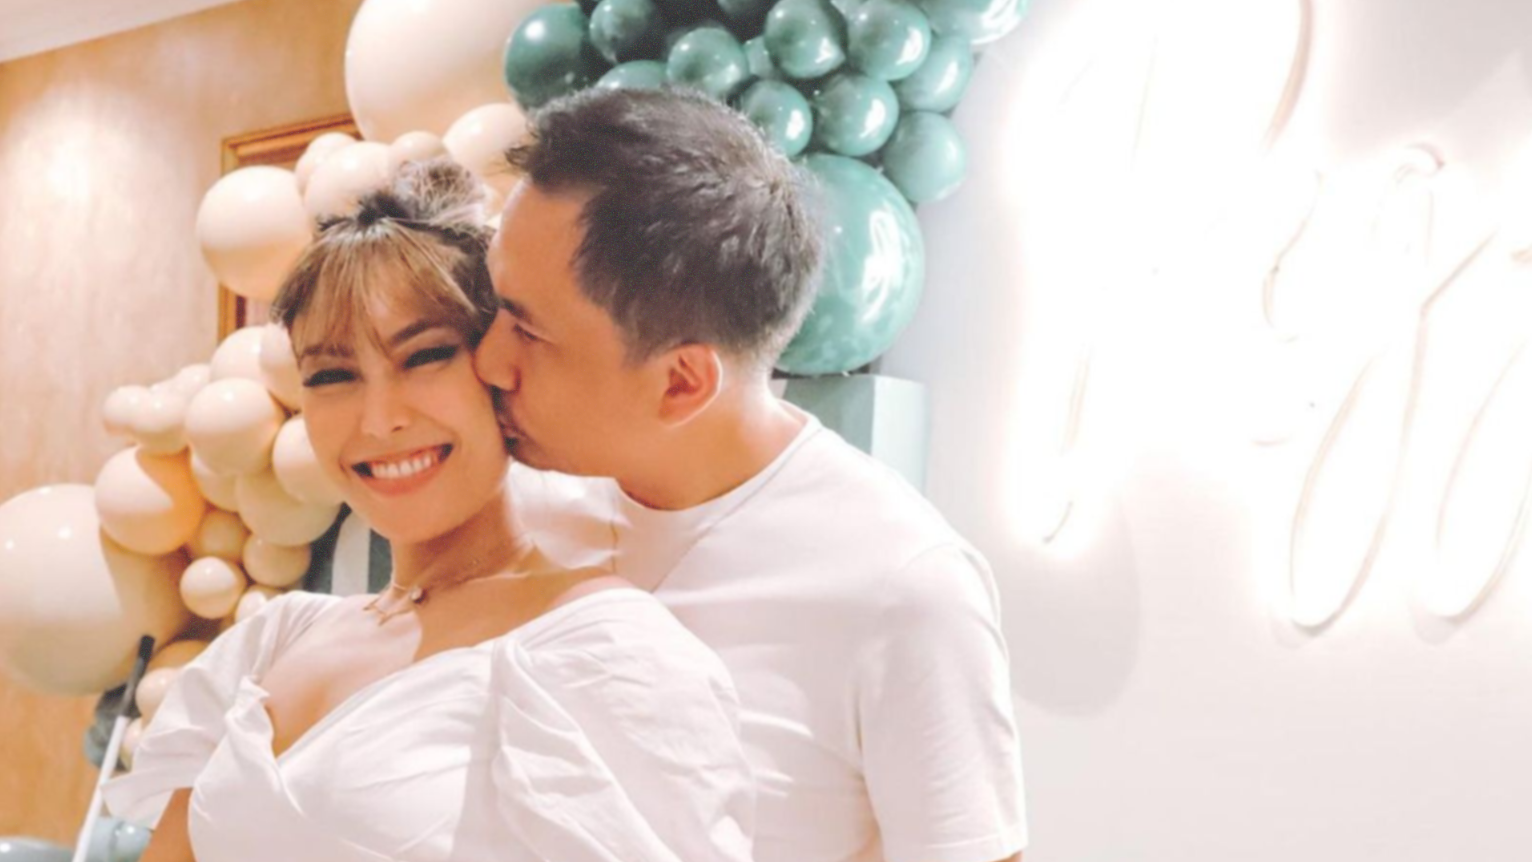 Pasangan Ayu Dewi dan Regi Datau diterpa isu kehadiran pelakor yang dibongkar Denise Chariesta. (Foto: Instagram)